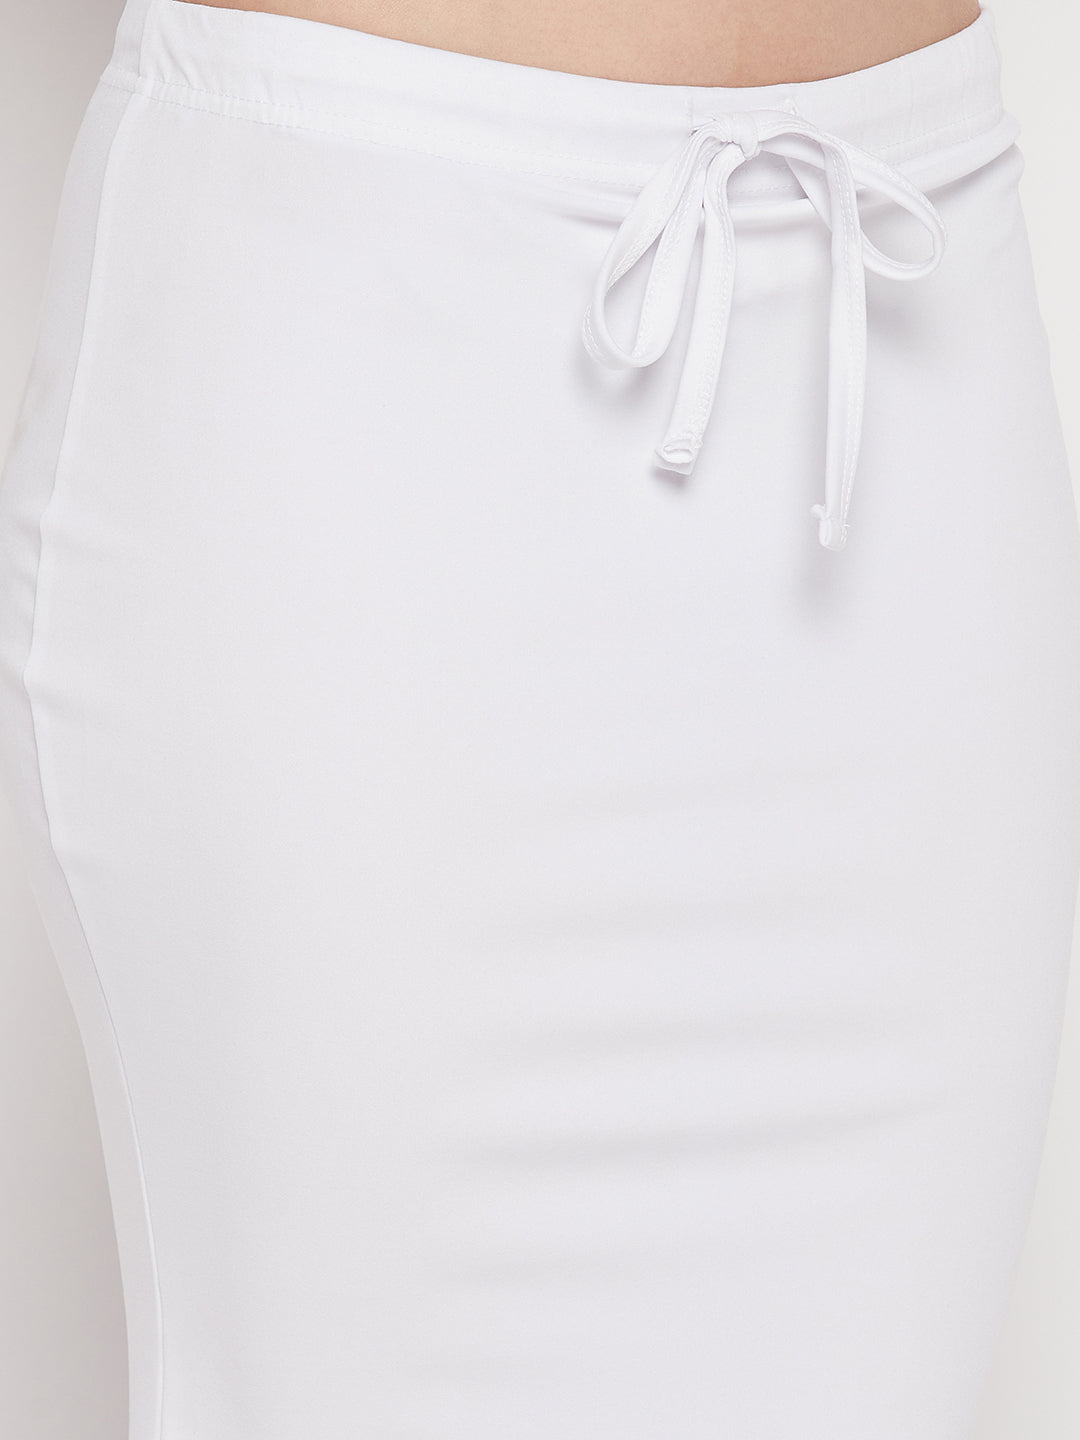 Zornitsa White Saree Shapewear Petticoat Polyester, Cotton Blend